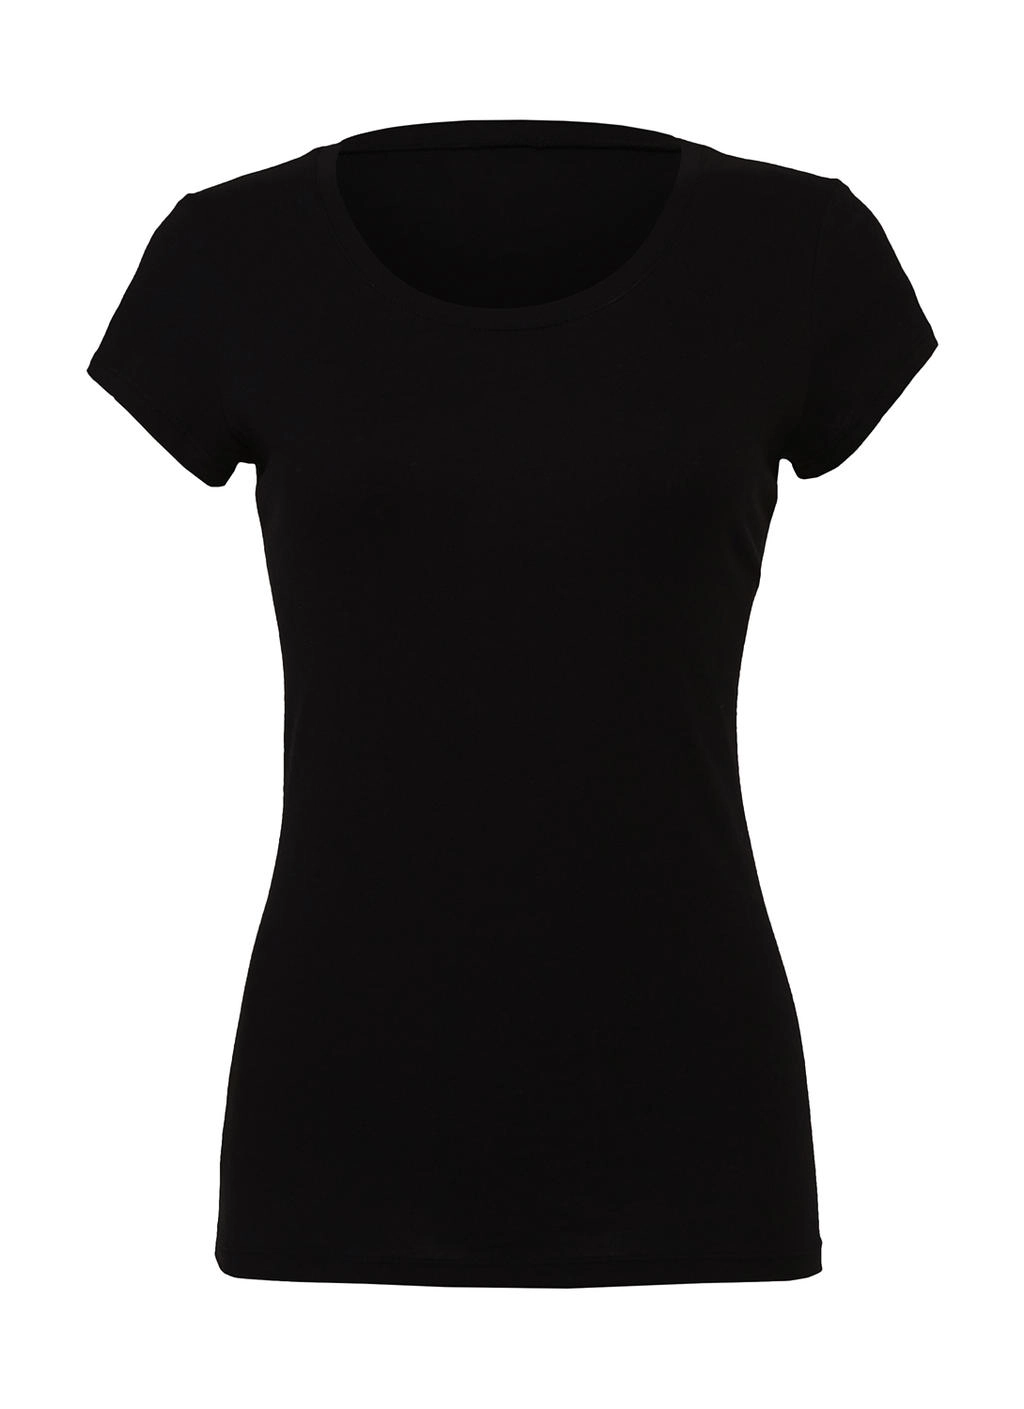 The Favorite T-Shirt zum Besticken und Bedrucken in der Farbe Black mit Ihren Logo, Schriftzug oder Motiv.